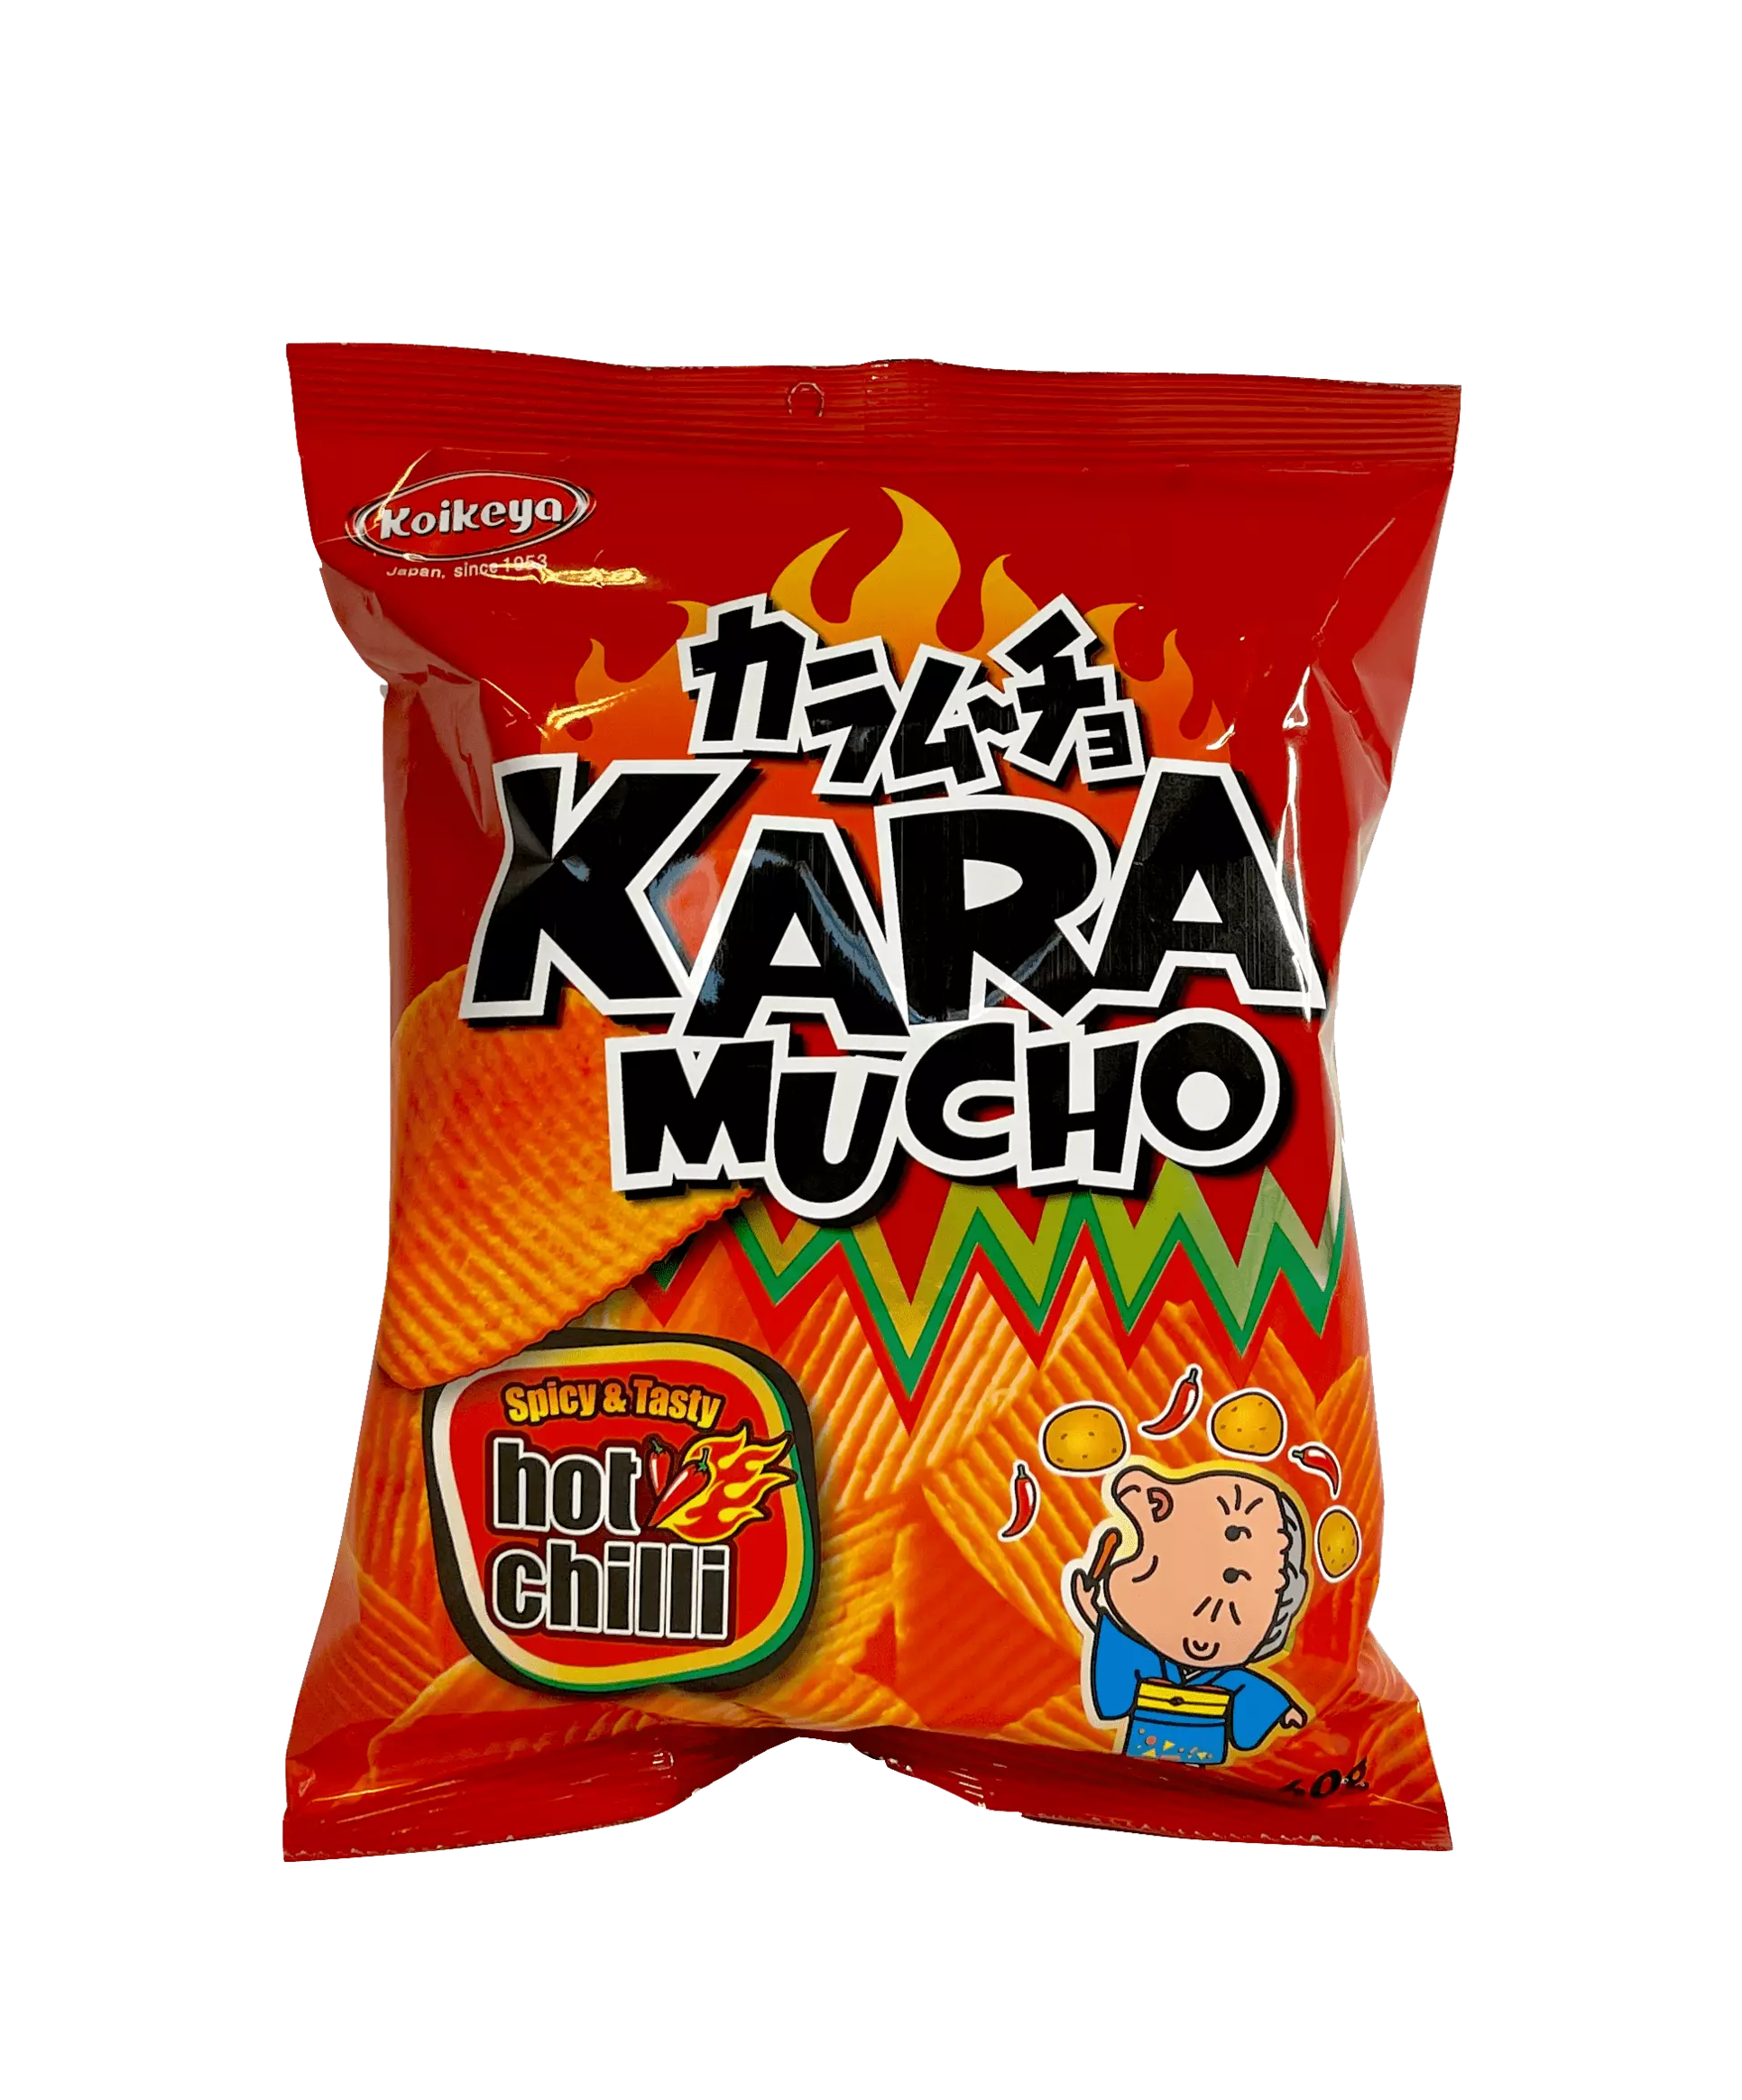 脆薯片 Karamucho 香辣风味 60g Koikeya 日本